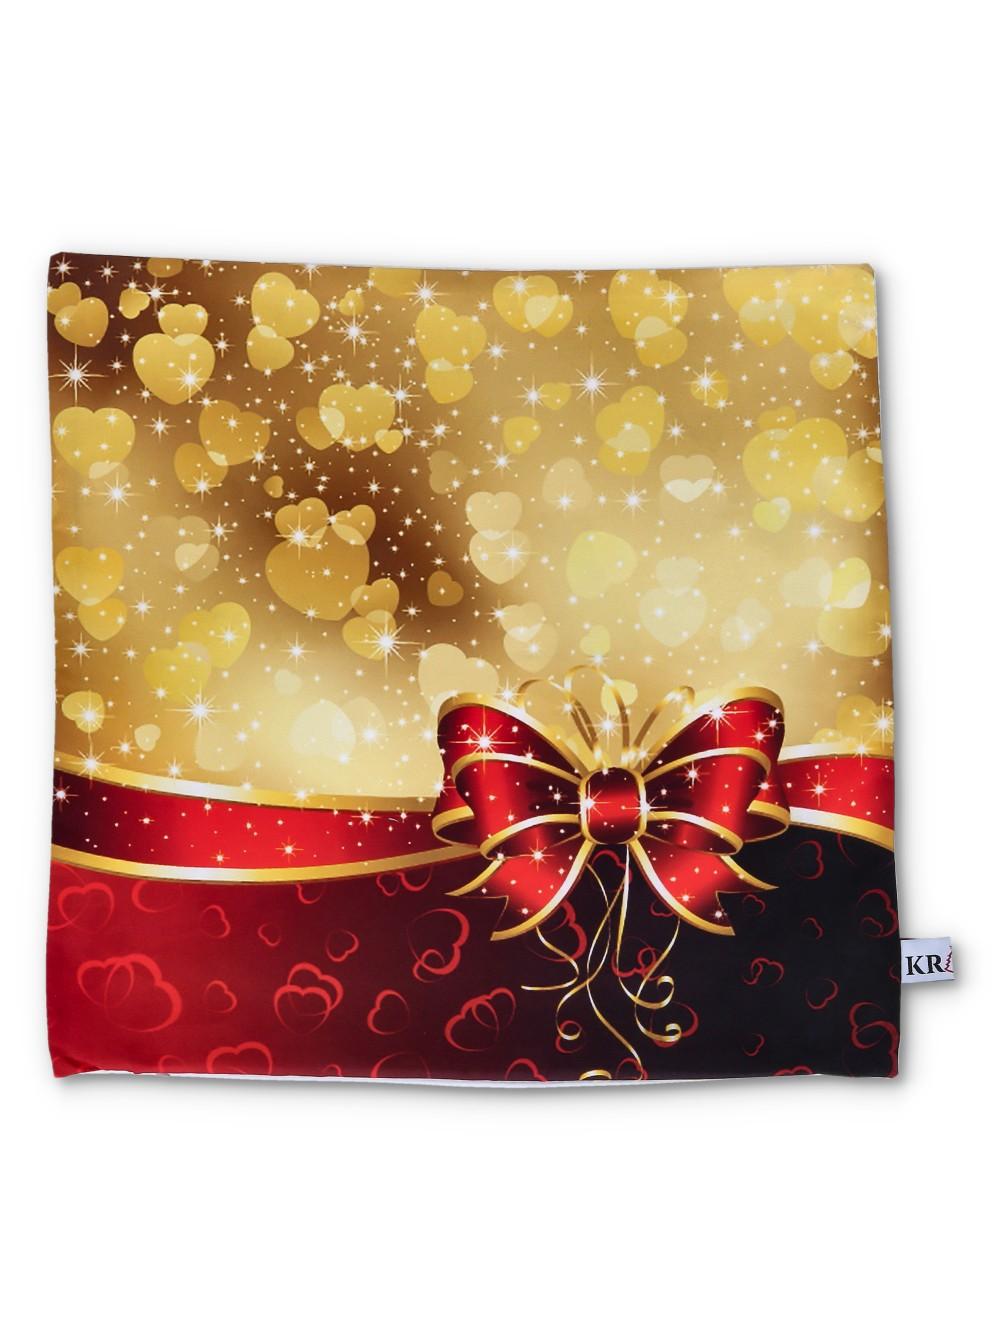 Selected image for KRIST+ Novogodišnja jastučnica sa lampionima crveno-zlatna